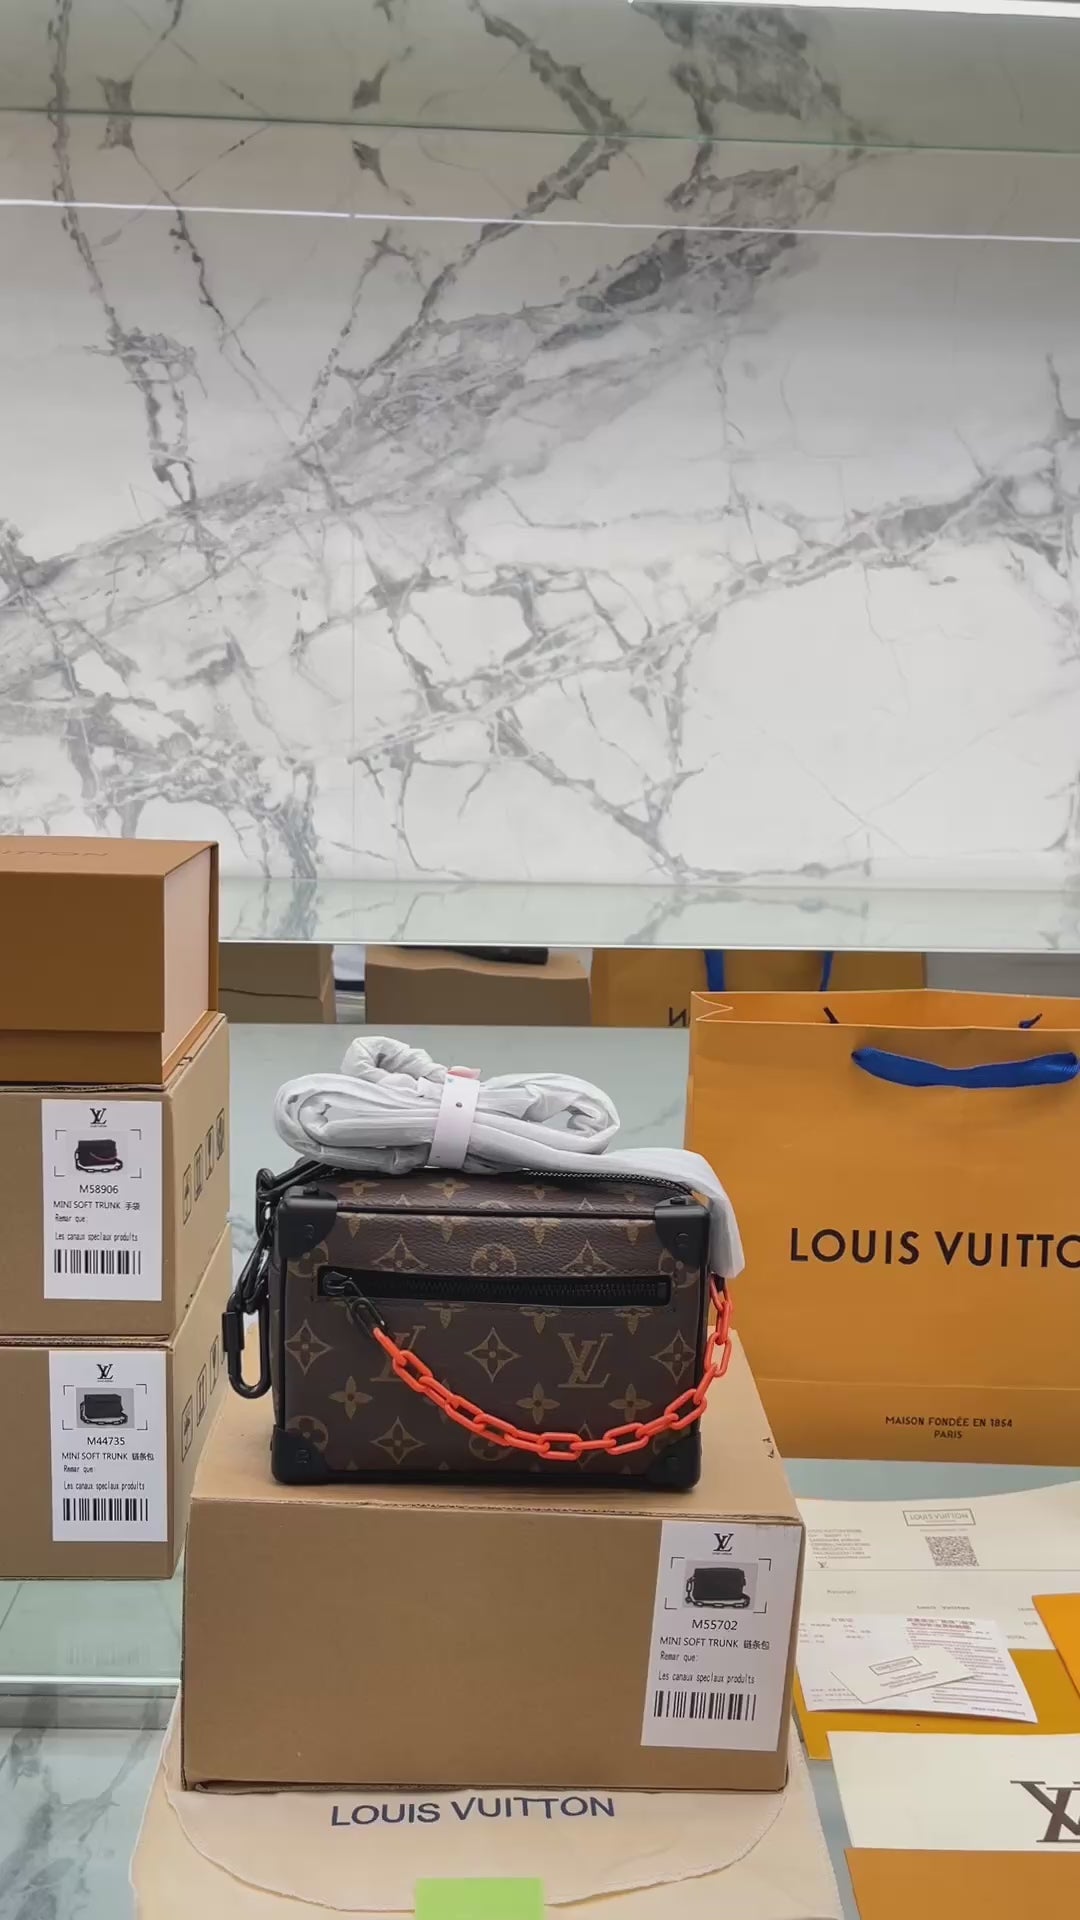 UNBOXING] Louis Vuitton Soft Trunk Mini